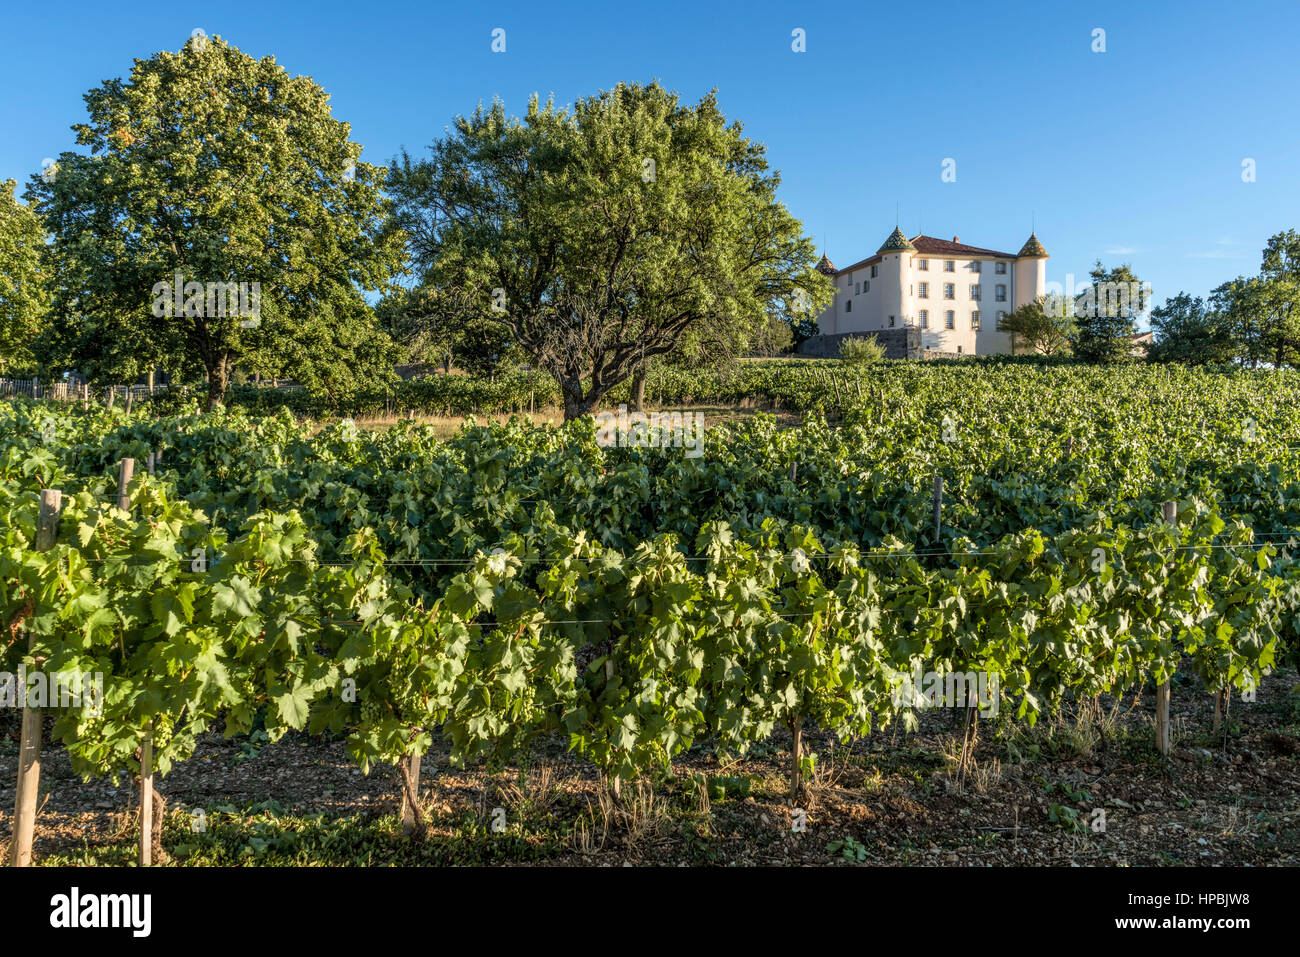 Castle of Aiguines, French Chateau, Village of Aiguines, Lac de Sainte Croix, Provence, France Stock Photo